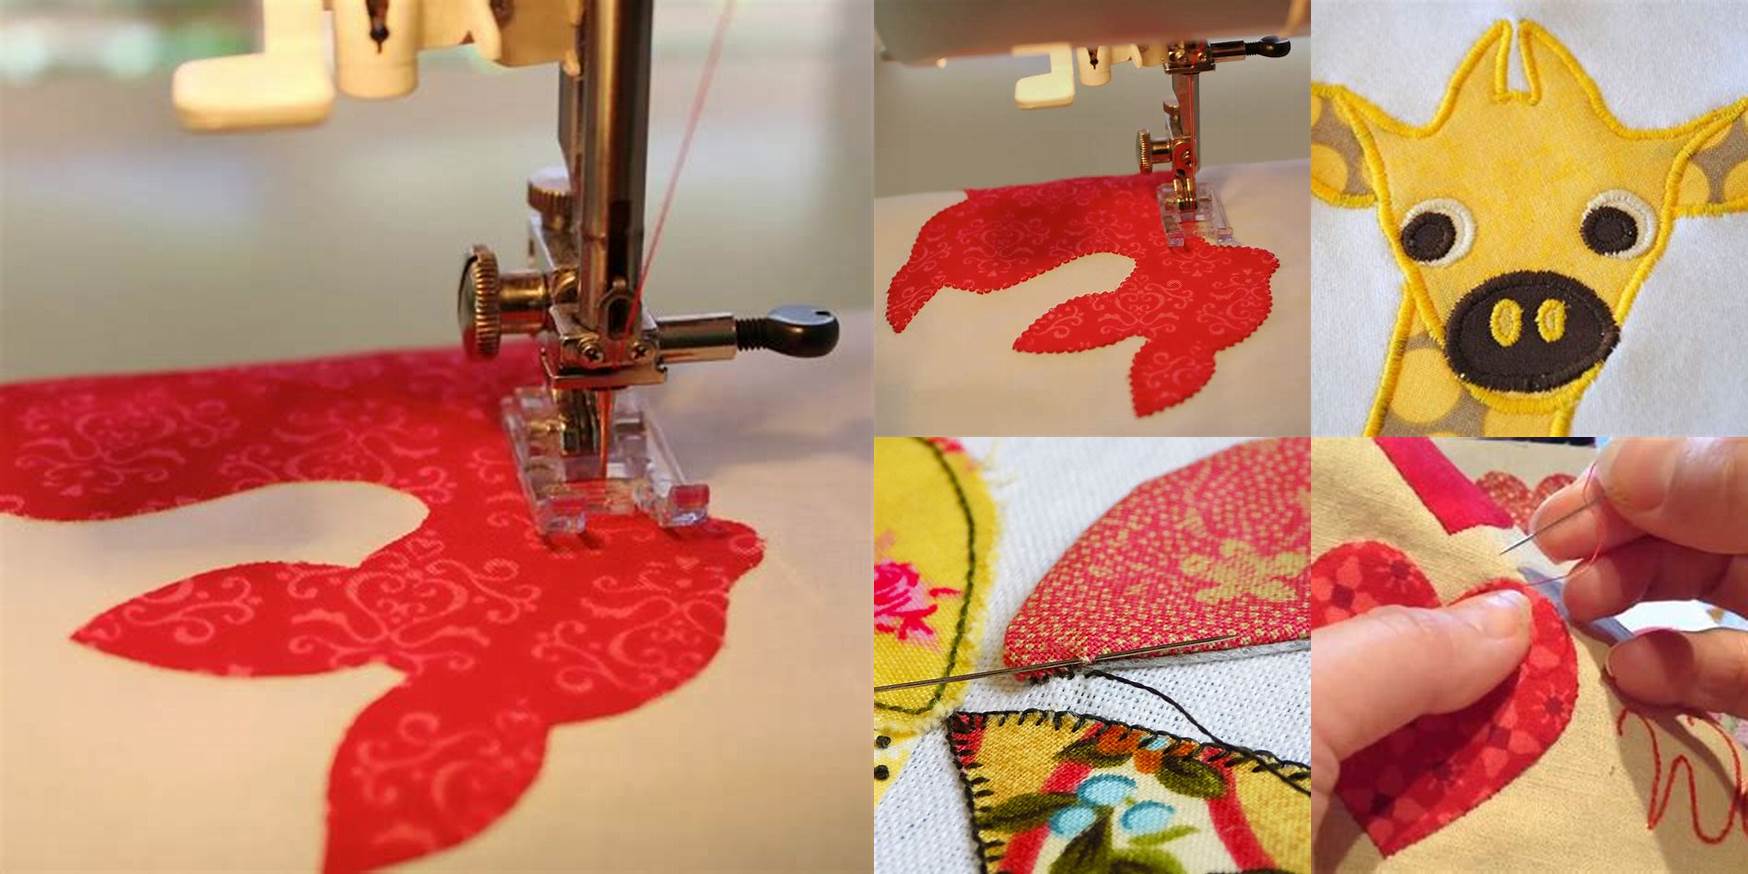 How To Sew Applique Onto Fabric